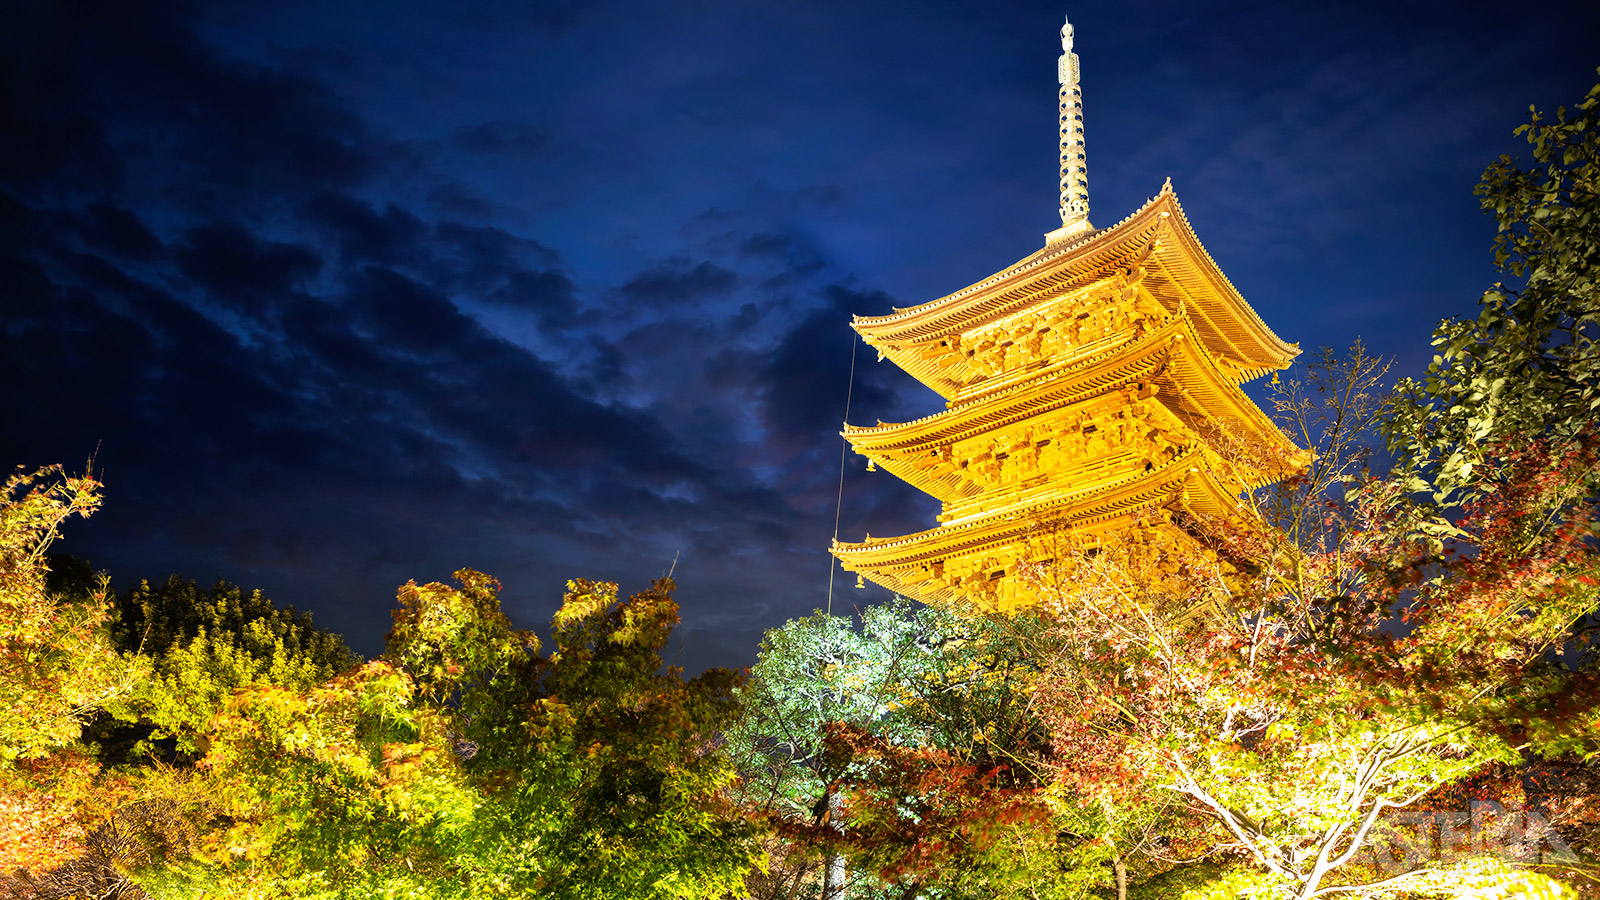 De meer dan 1.000 jaar oude To-ji tempel is één van de meest vooraanstaande bezienswaardigheden in Kyoto